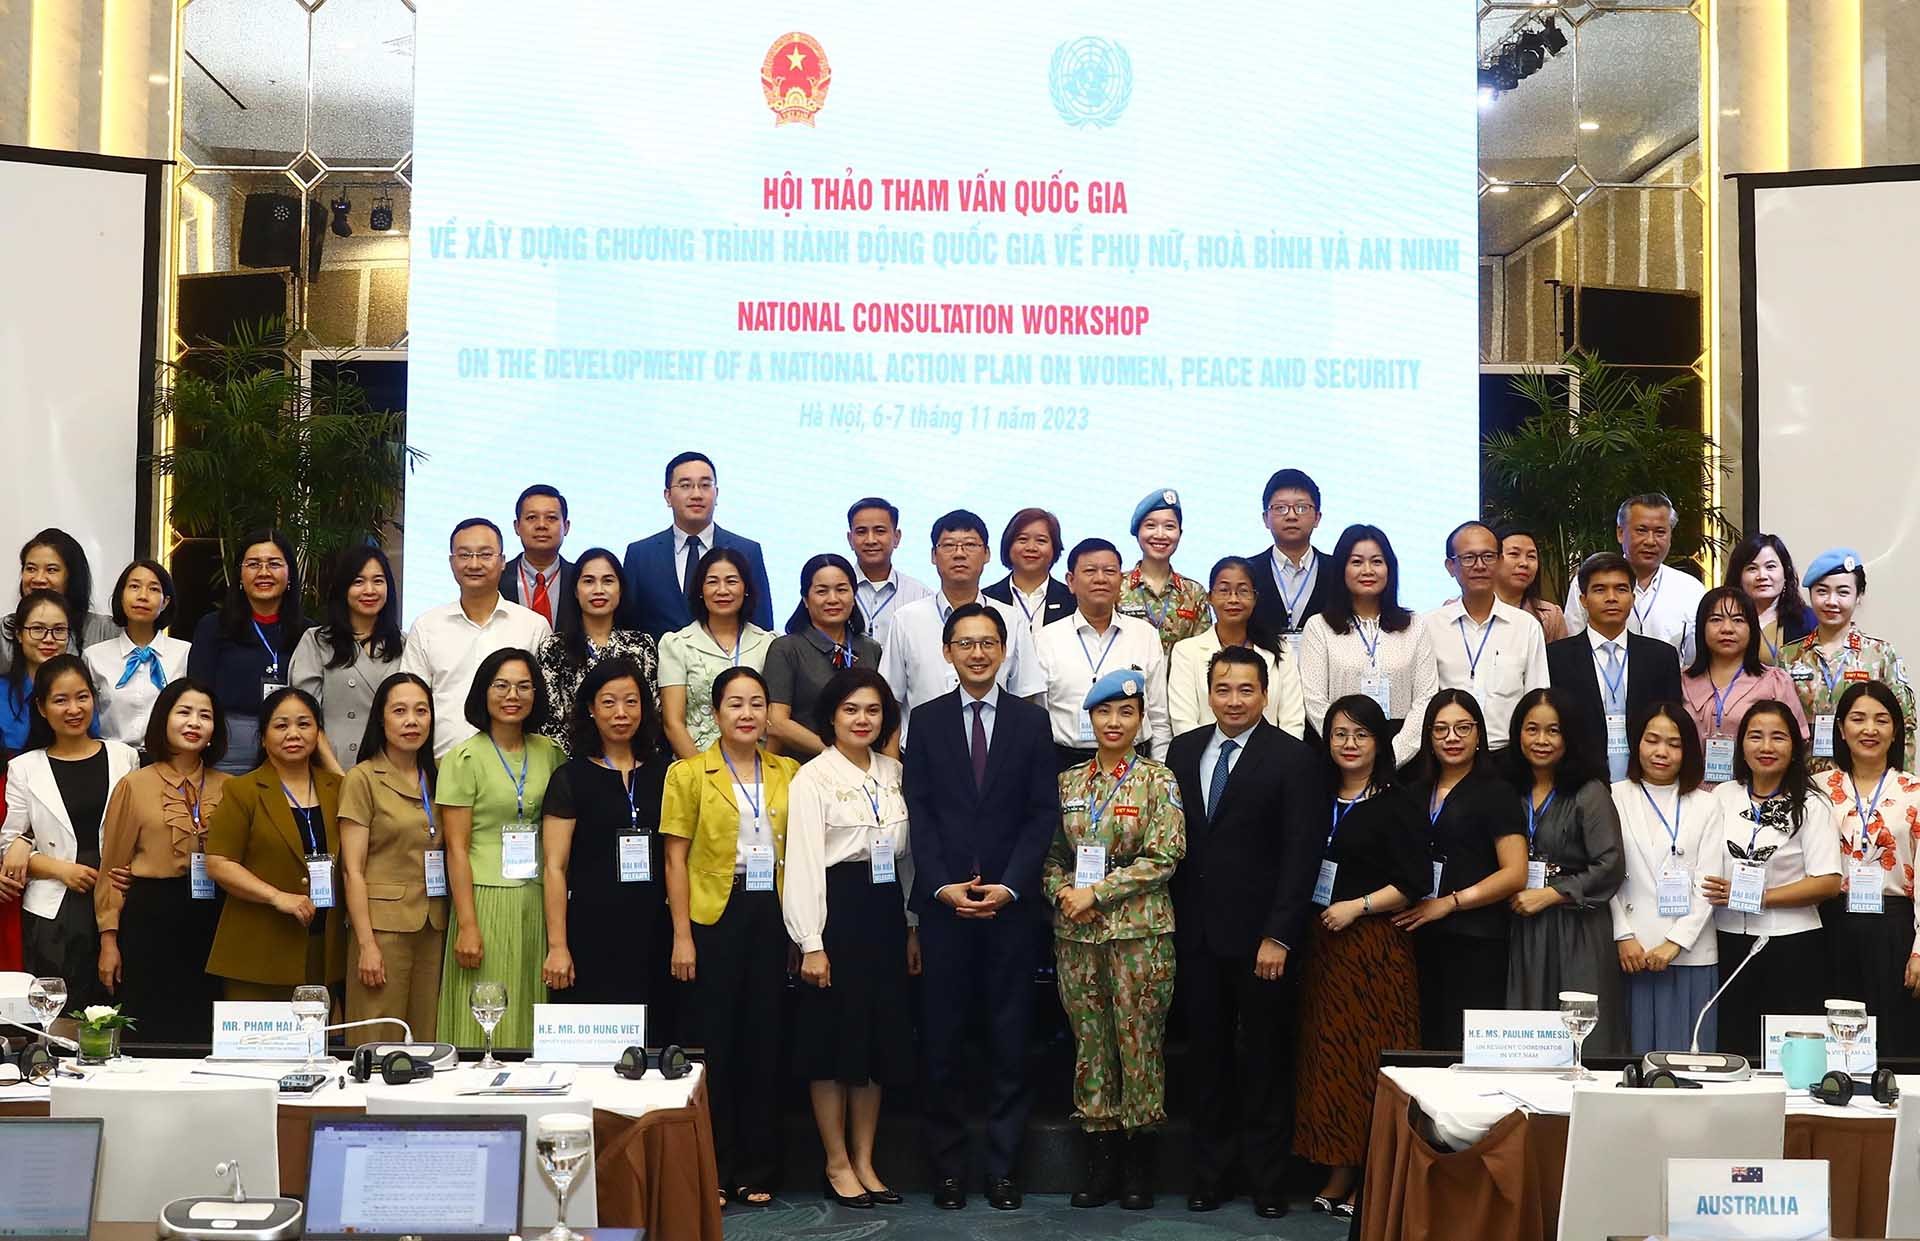 Hội thảo tham vấn quốc gia về dự thảo Chương trình hành động quốc gia về phụ nữ, hòa bình và an ninh, ngày 6/11/2023, tại Hà Nội. (Ảnh: Tuấn Việt)